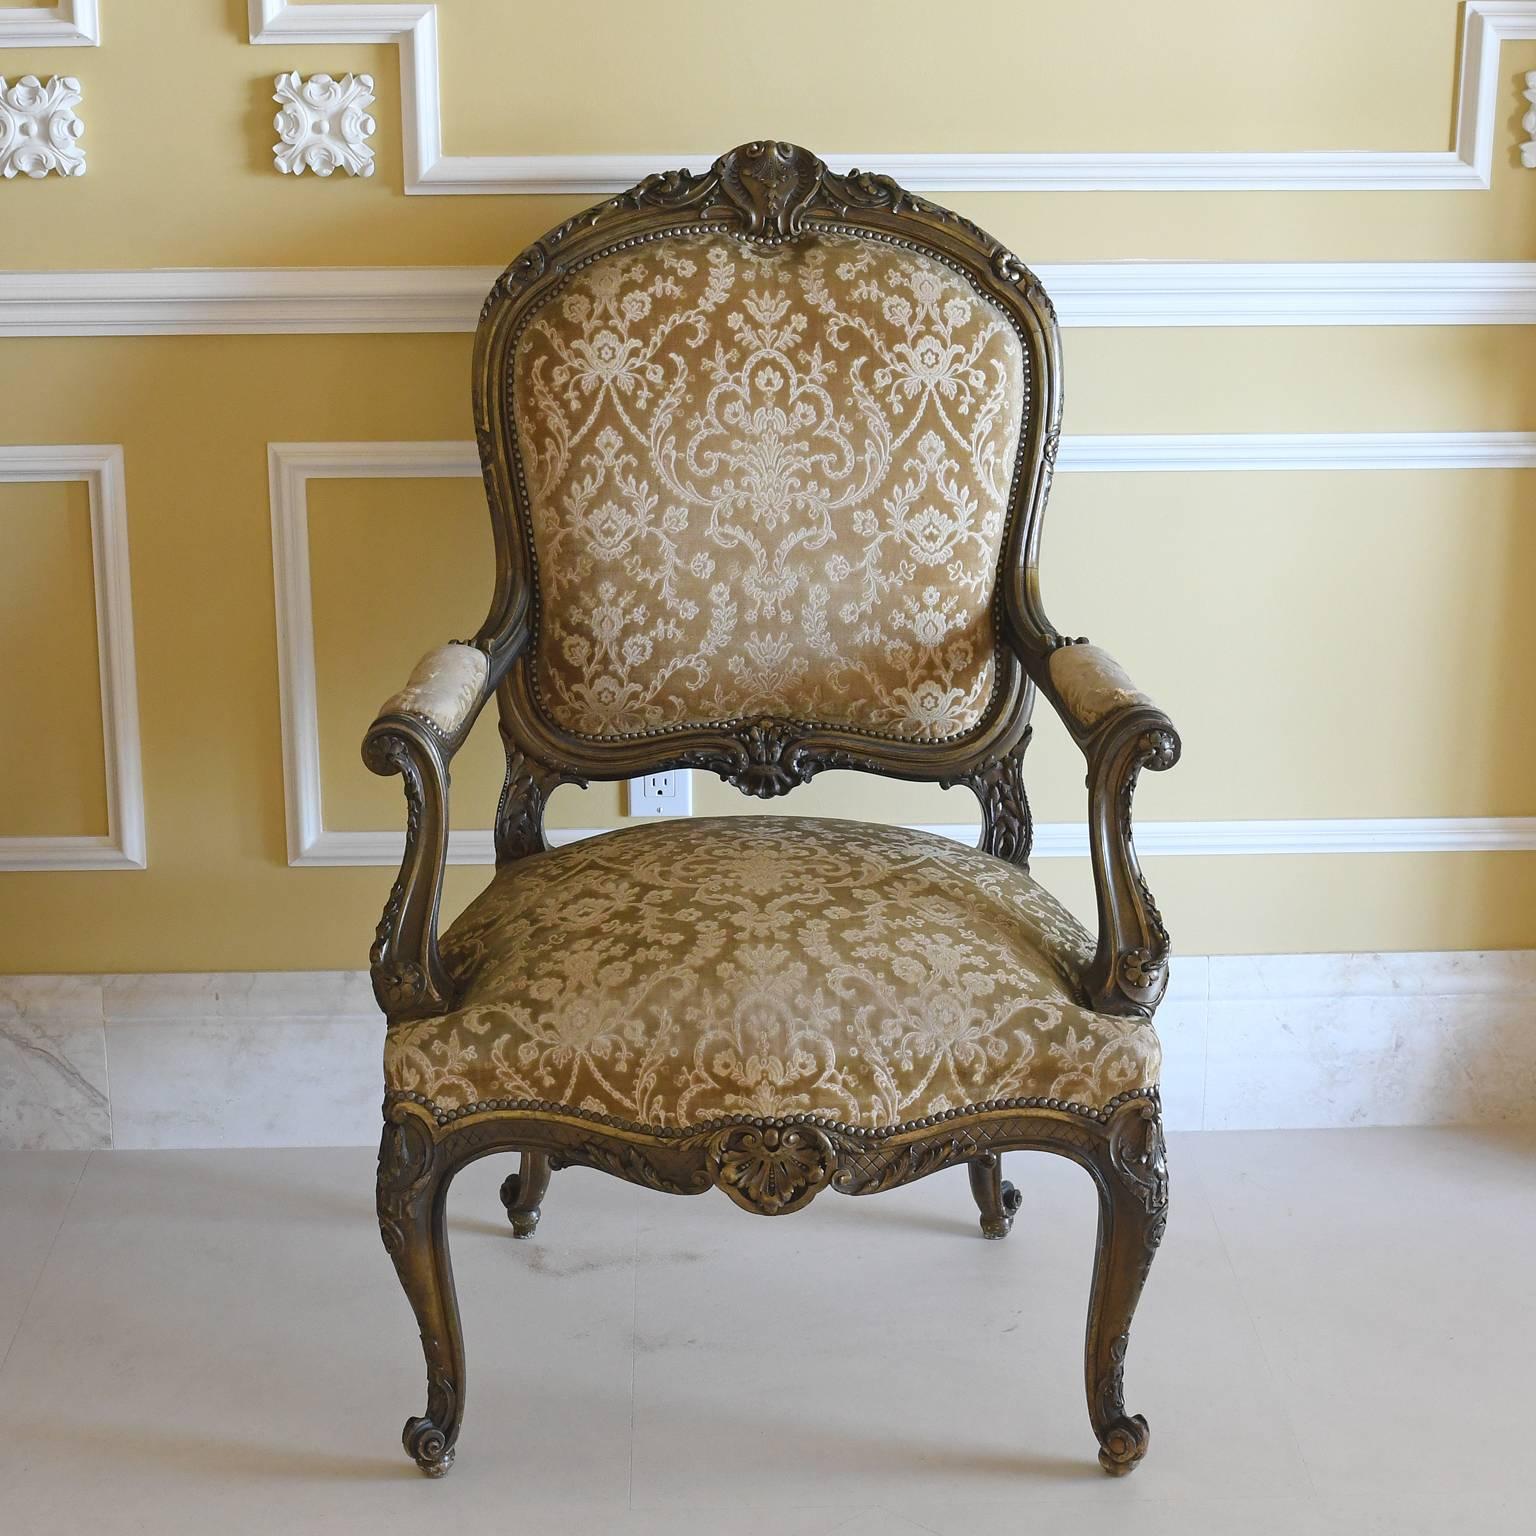 Ein Paar späte Fauteuils oder Sessel von Napoleon III aus Hartholz mit brüniertem Goldton. Die Stuhlrahmen im Louis-XV-Stil haben geschnitzte Cabriole-Beine mit Escargot-Füßen, geschnitzte Armlehnen und Schnitzereien auf dem Mittelkamm und der